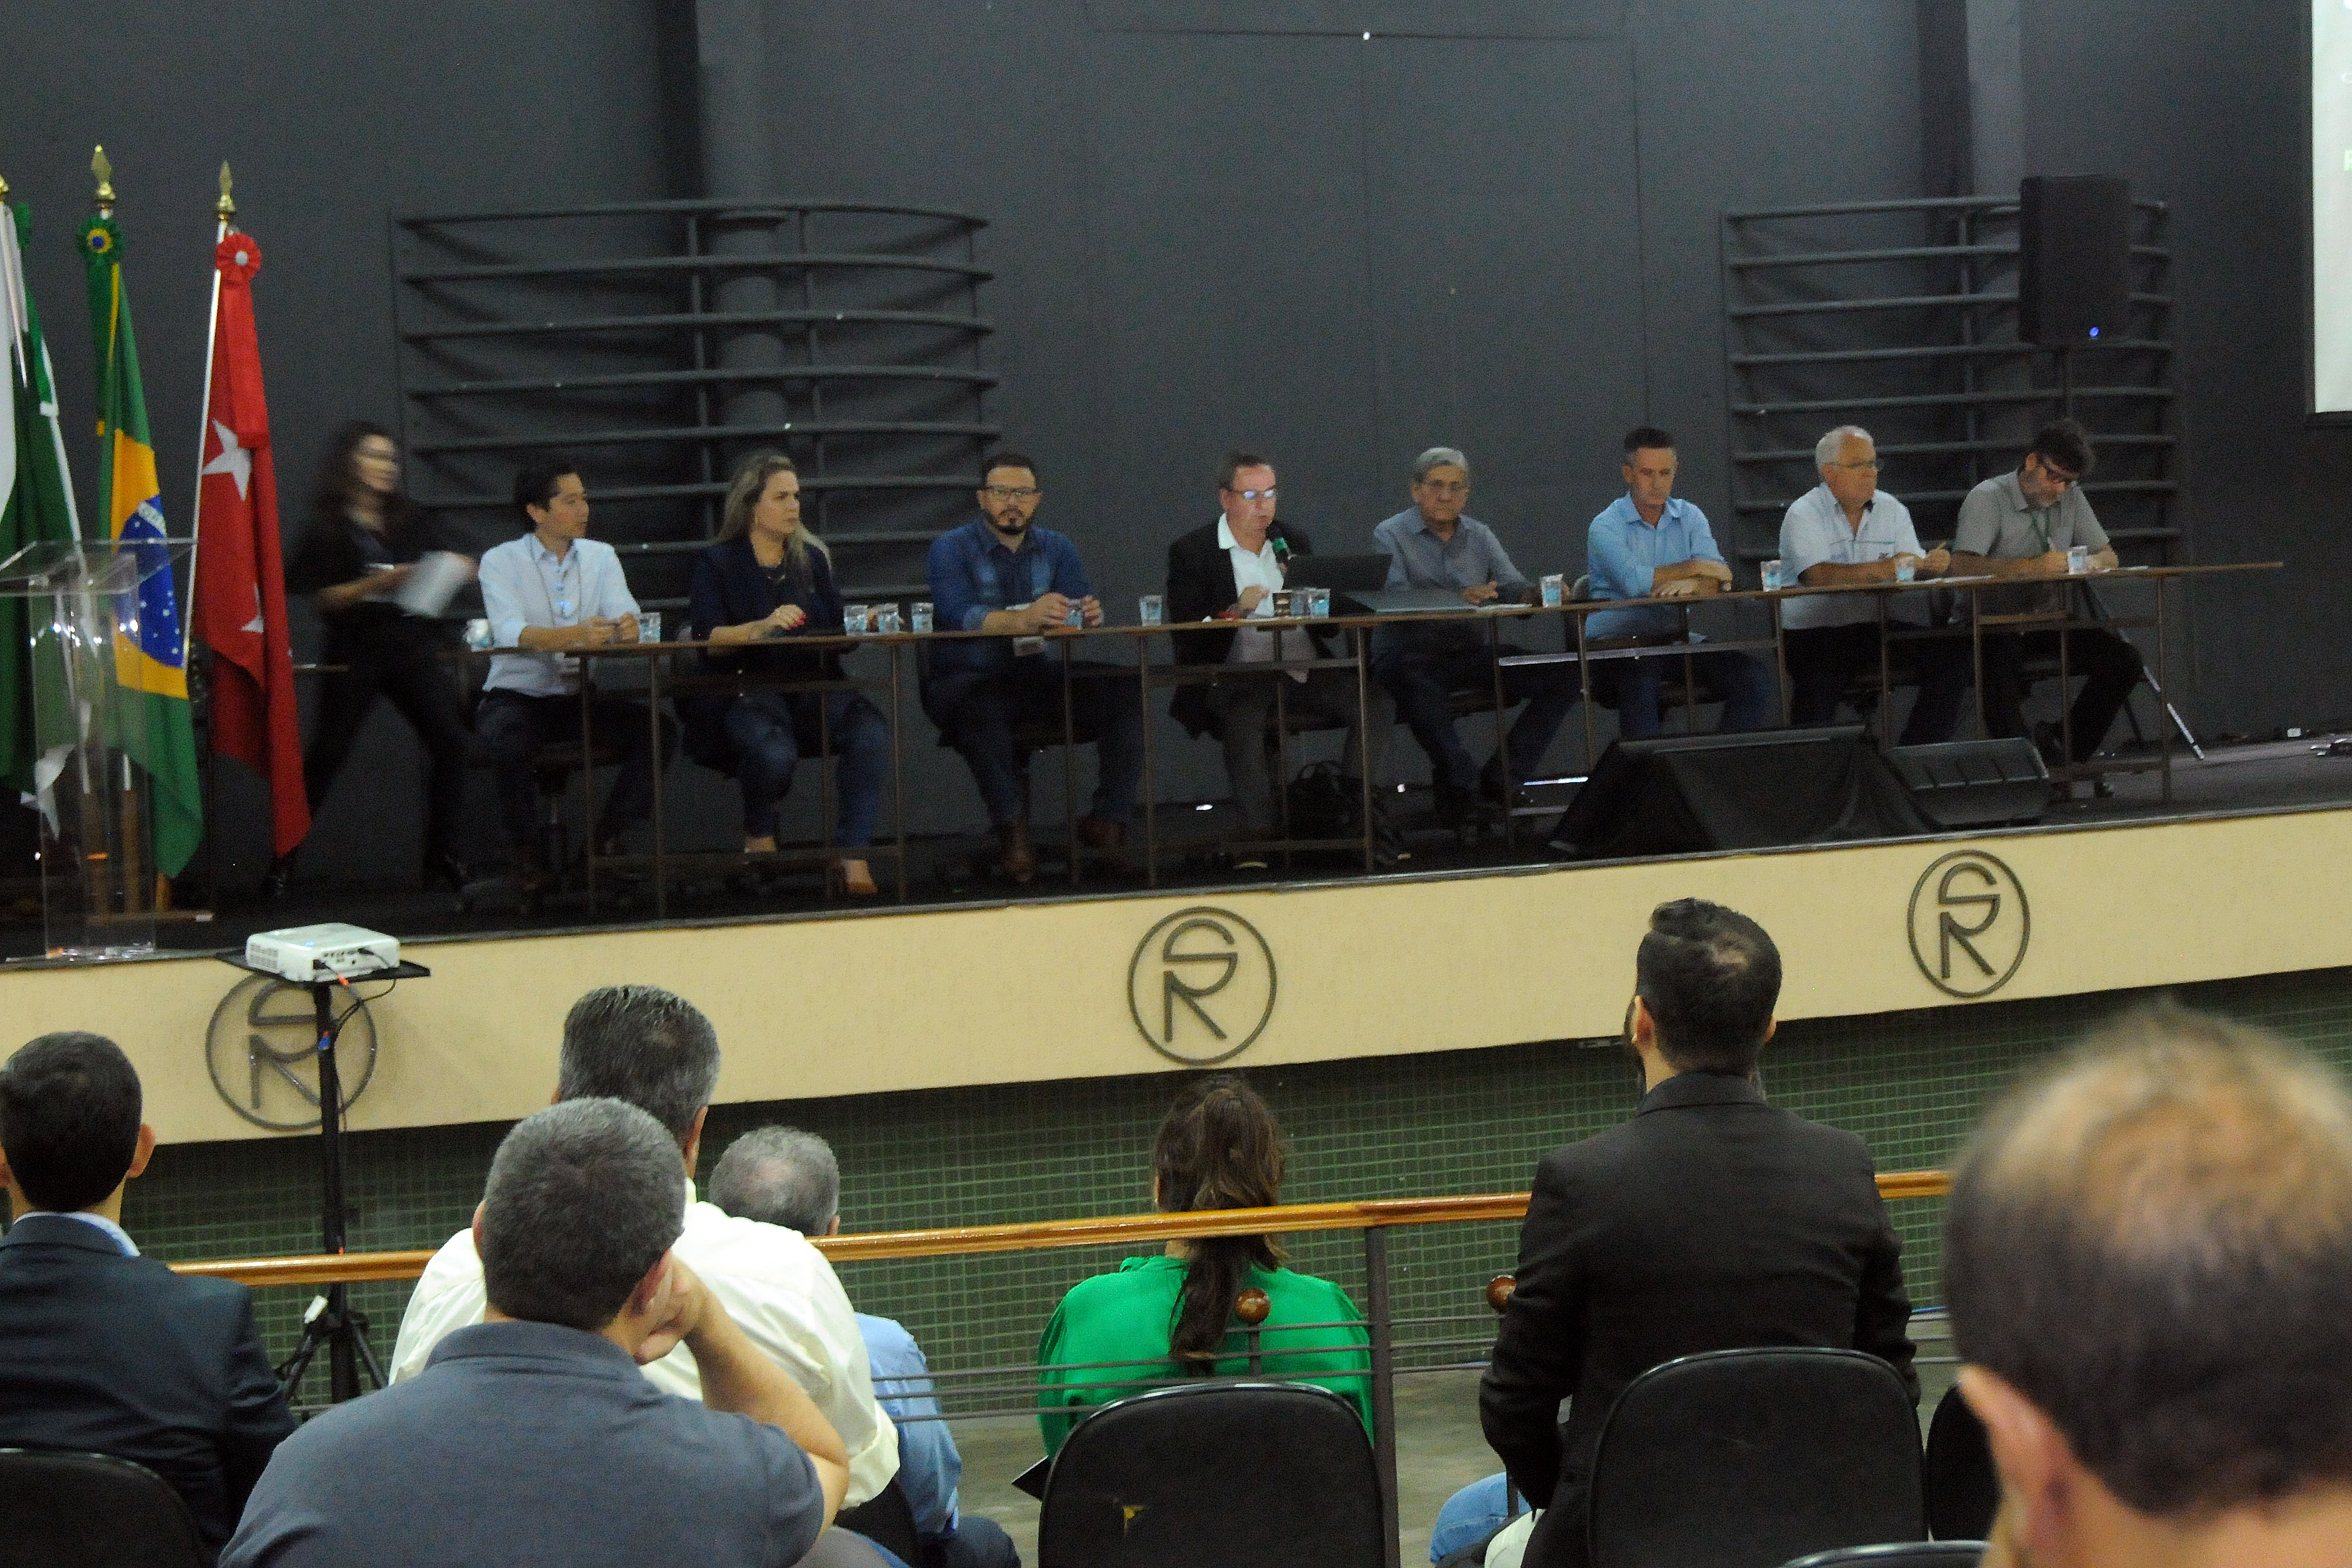 Câmara de Vereadores debate na ExpoLondrina soluções para recuperação de estradas rurais